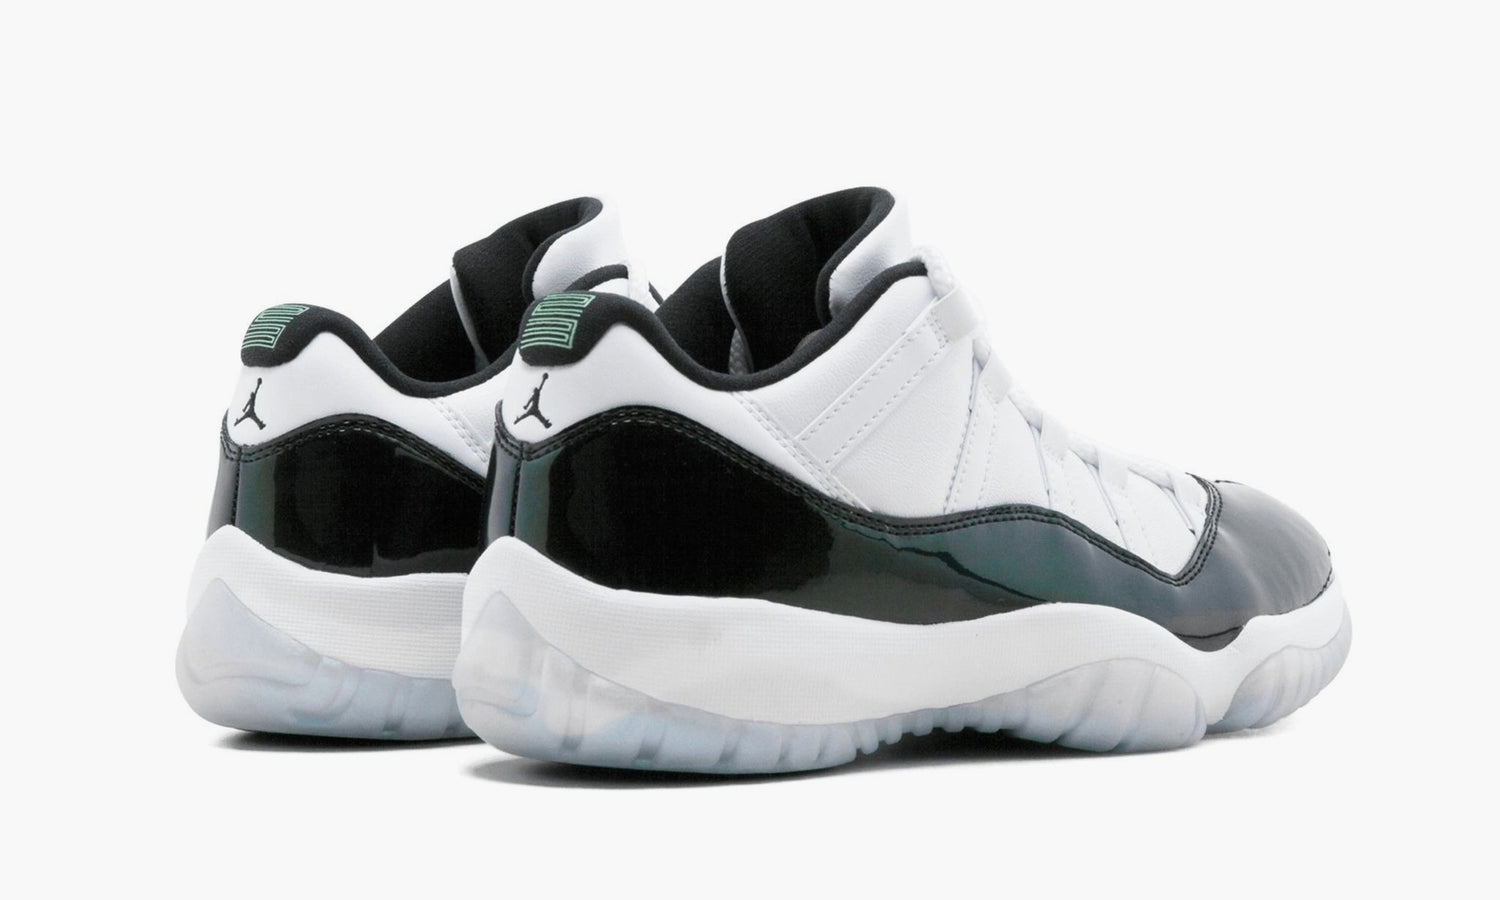 Nike Air Jordan 11 Retro Low "Easter Emerald" - 528895 145 | Grailshop